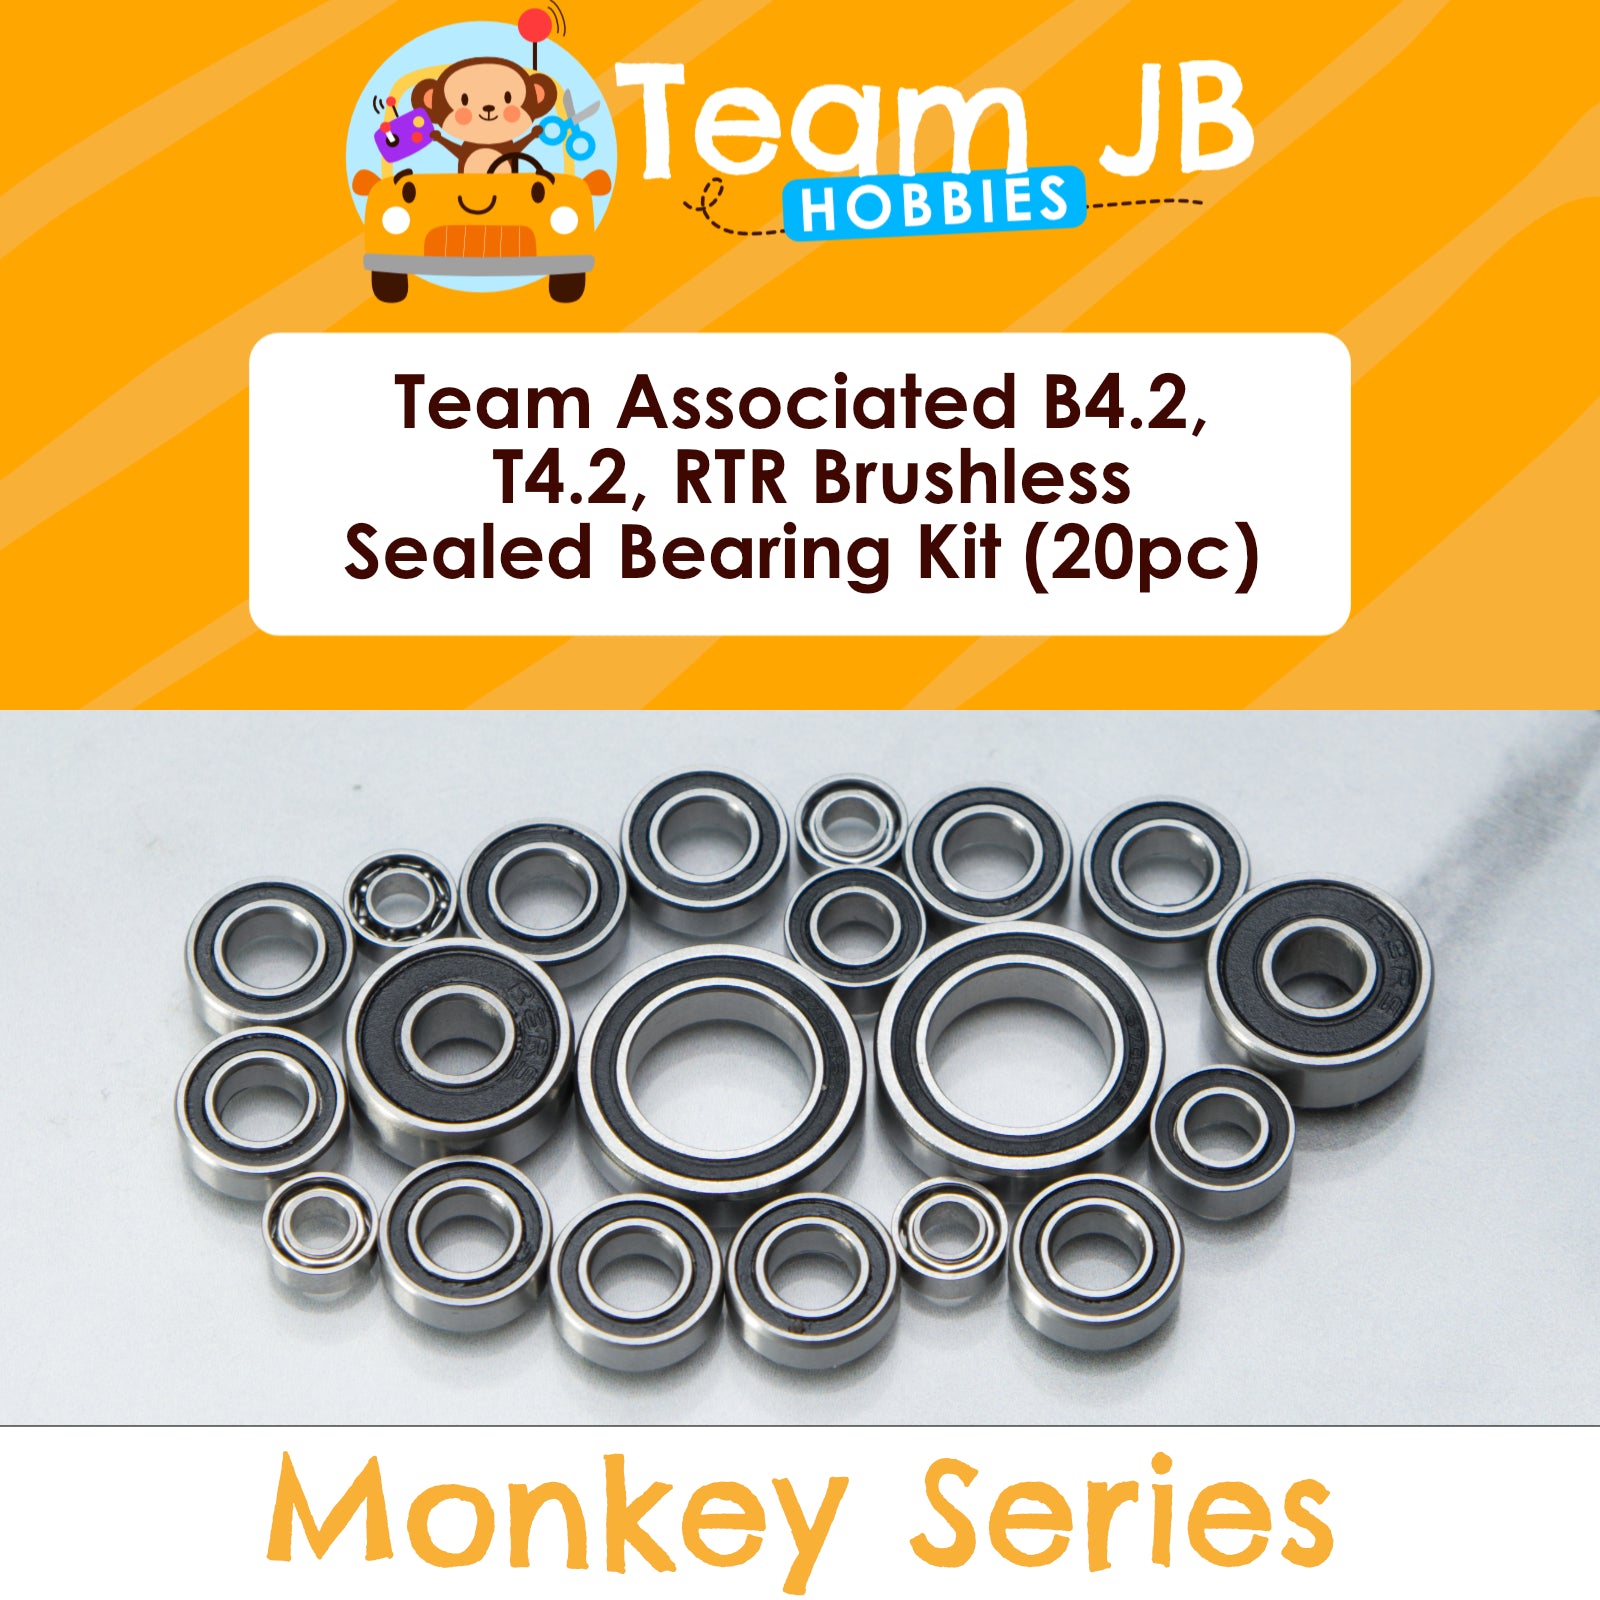 Team Associated B4.2, T4.2, RTR Brushless - Sealed Bearing Kit